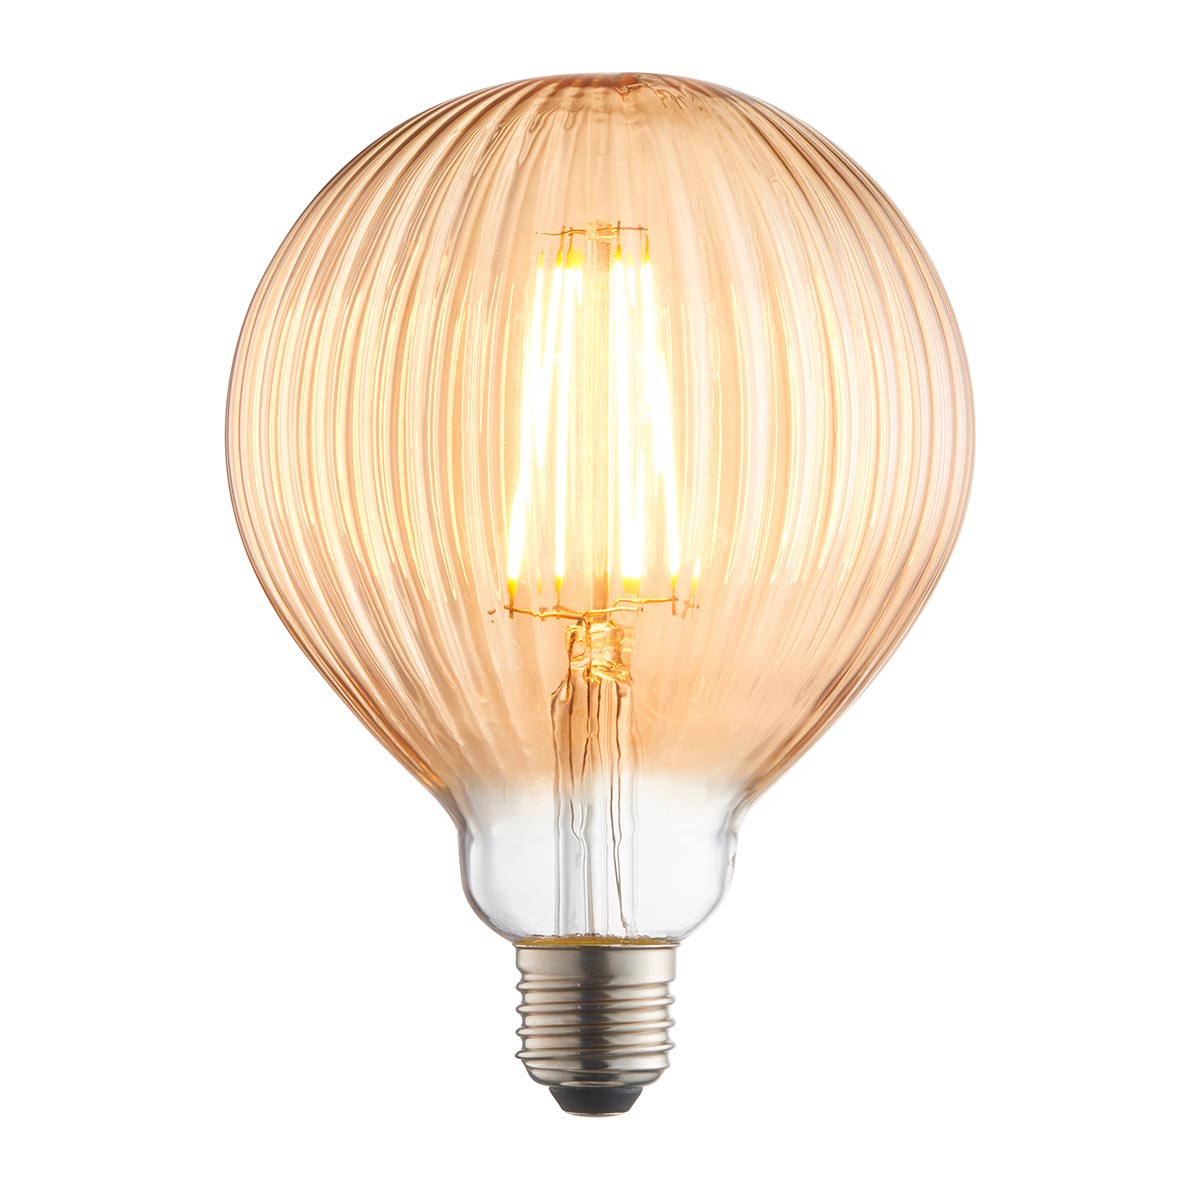 Ribb 125mm 4w LED Amber Globe E27 Light Bulb 400lm